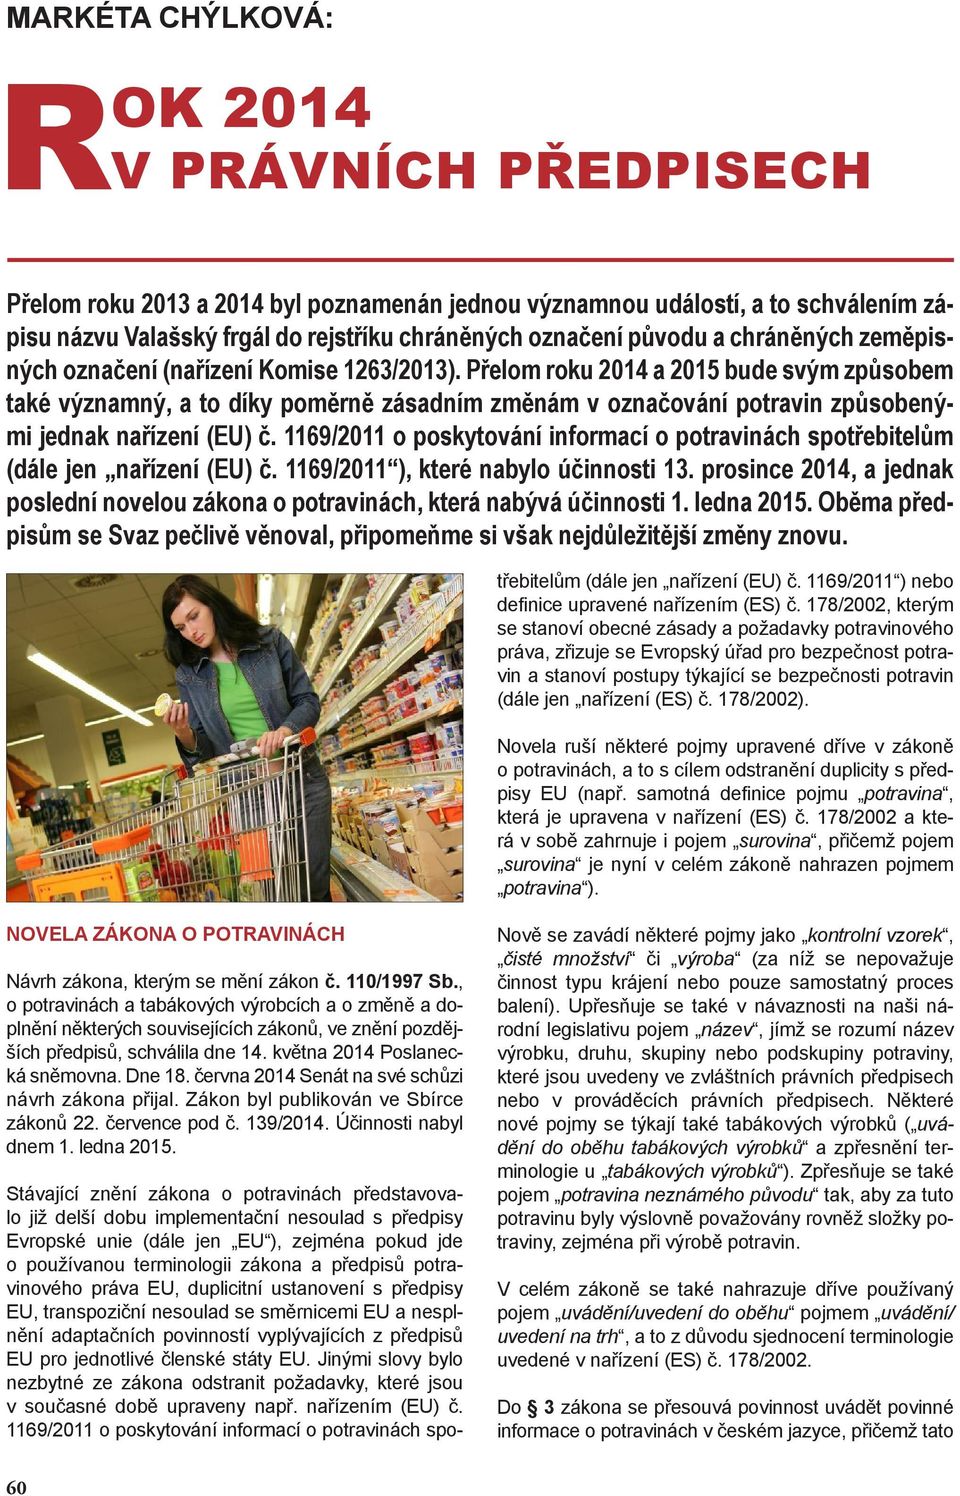 Přelom roku 2014 a 2015 bude svým způsobem také významný, a to díky poměrně zásadním změnám v označování potravin způsobenými jednak nařízení (EU) č.